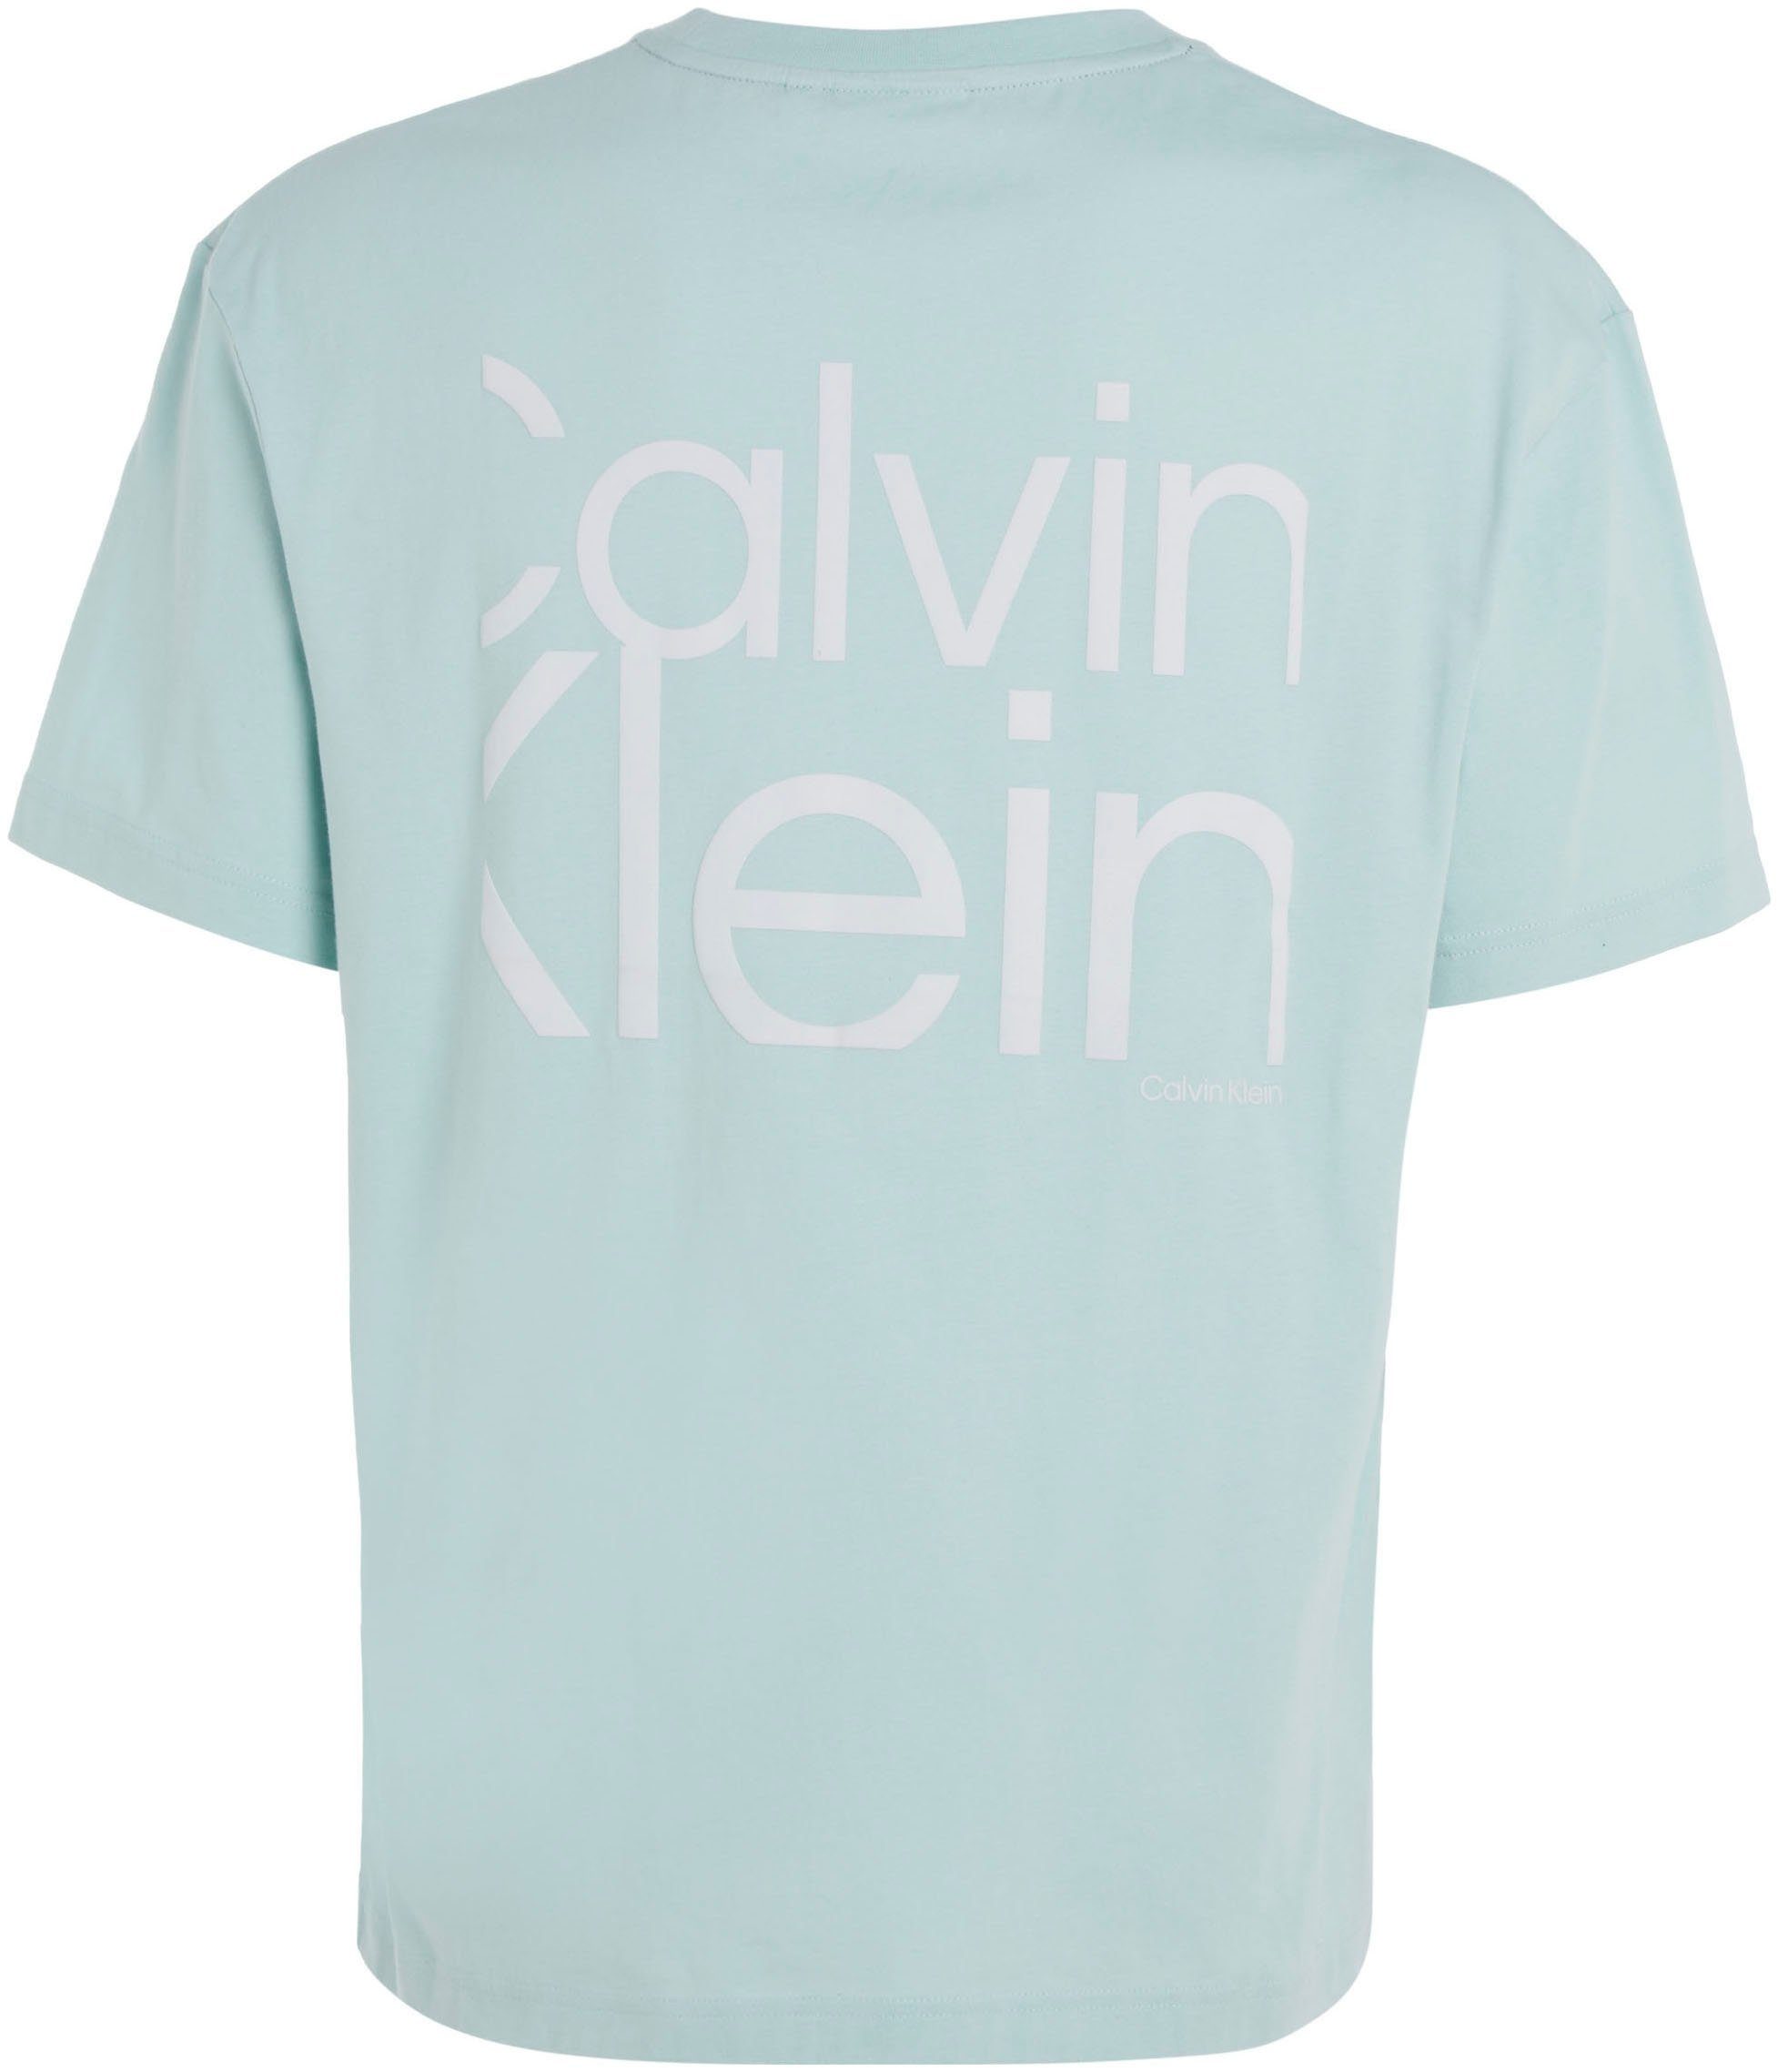 Klein Calvin Logodruck mit und vorne Kurzarmshirt ghost Klein Calvin green hinten